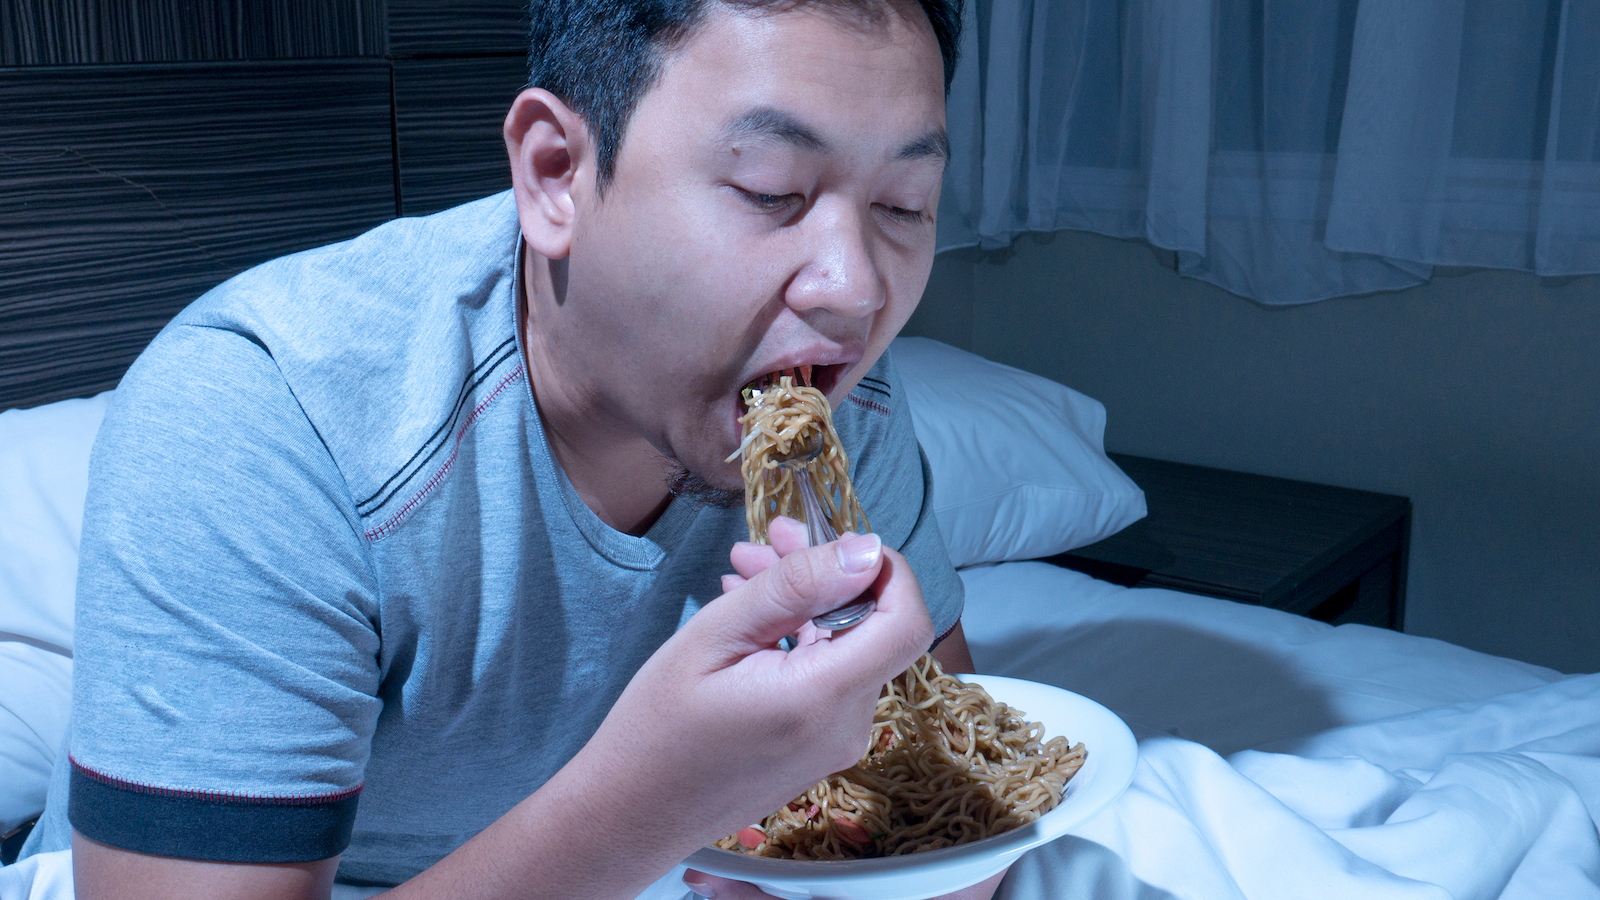 A man eats while partially asleep